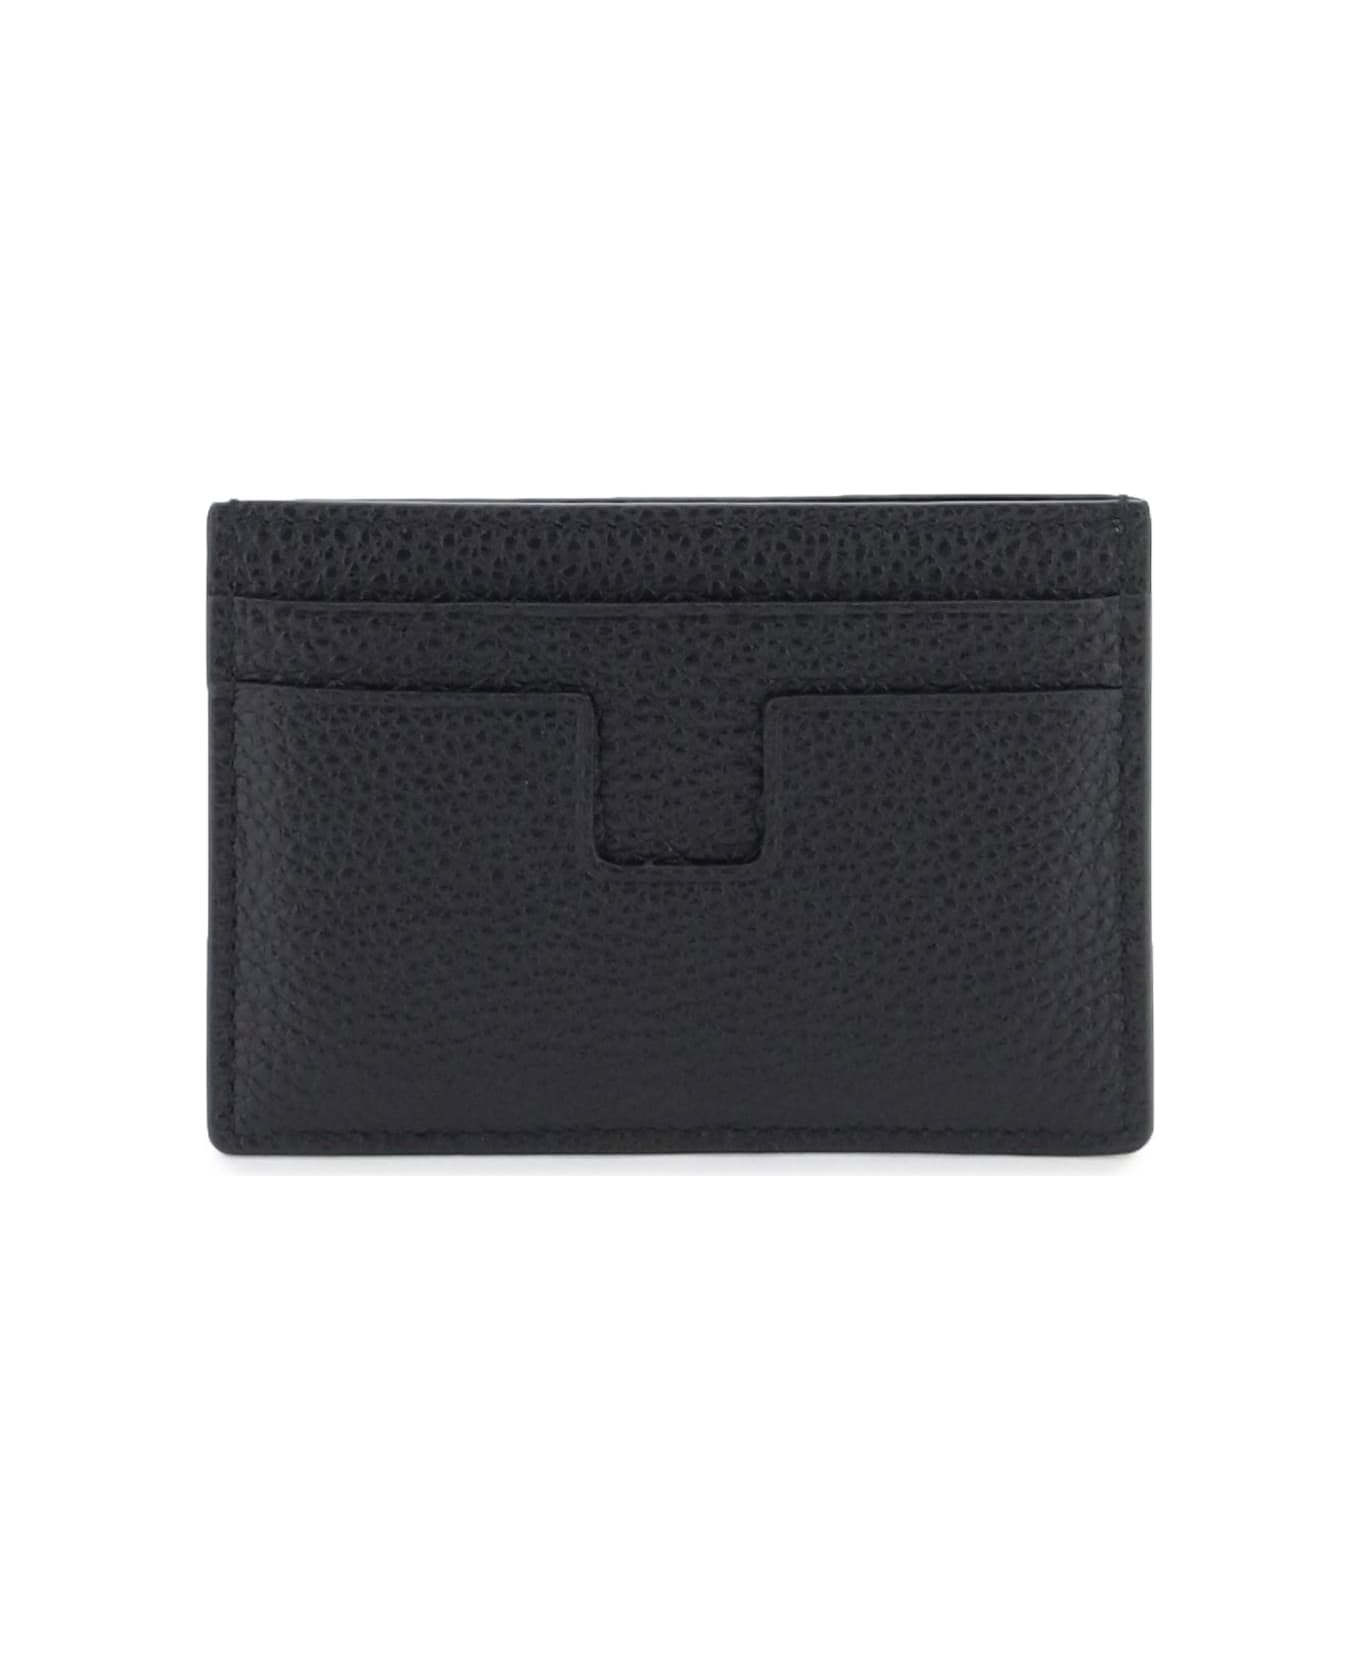 Tom Ford Leather Card Holder - black